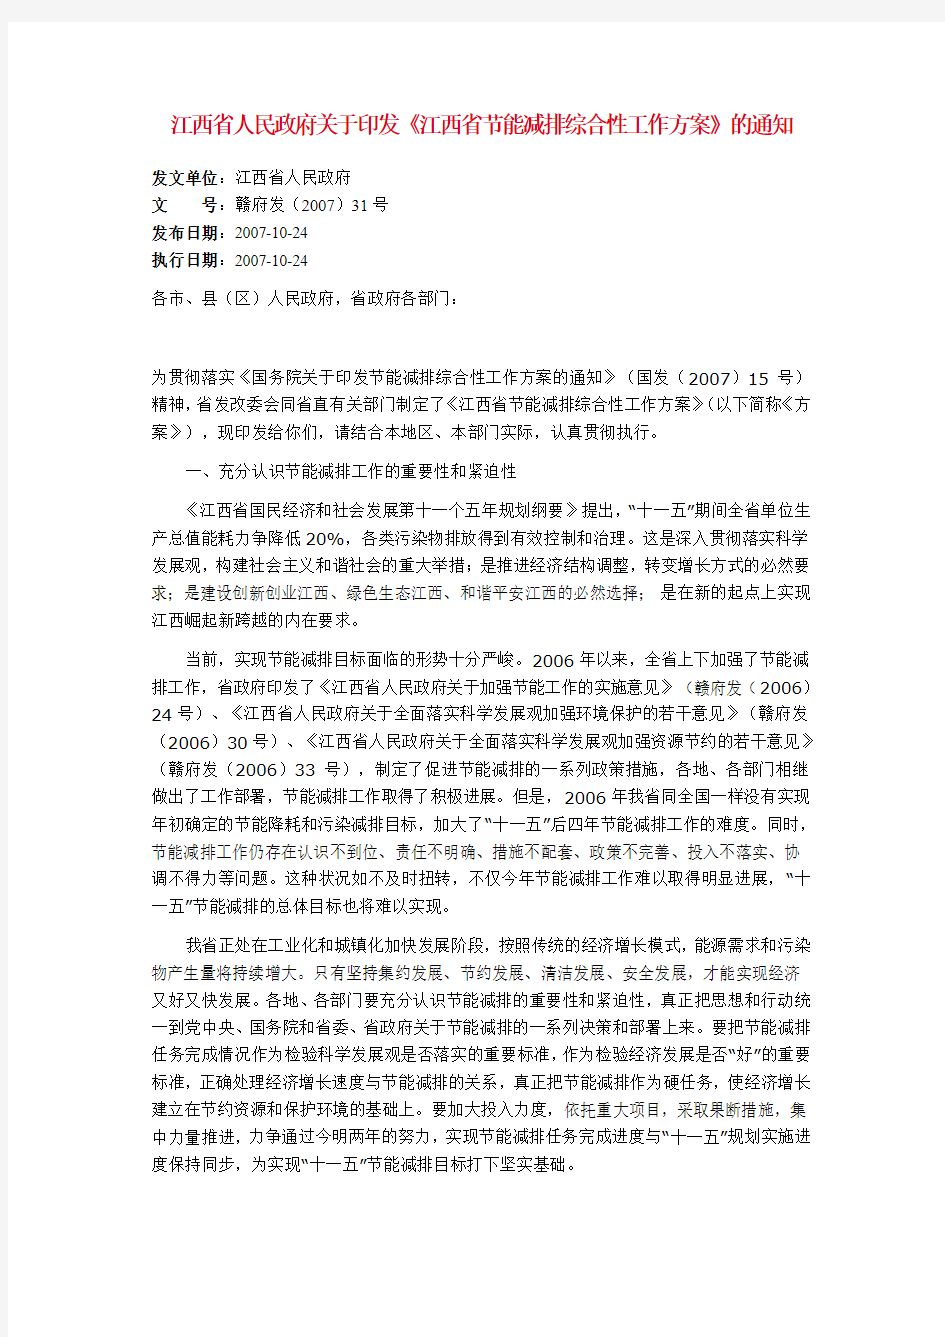 102-江西省节能减排综合性工作方案